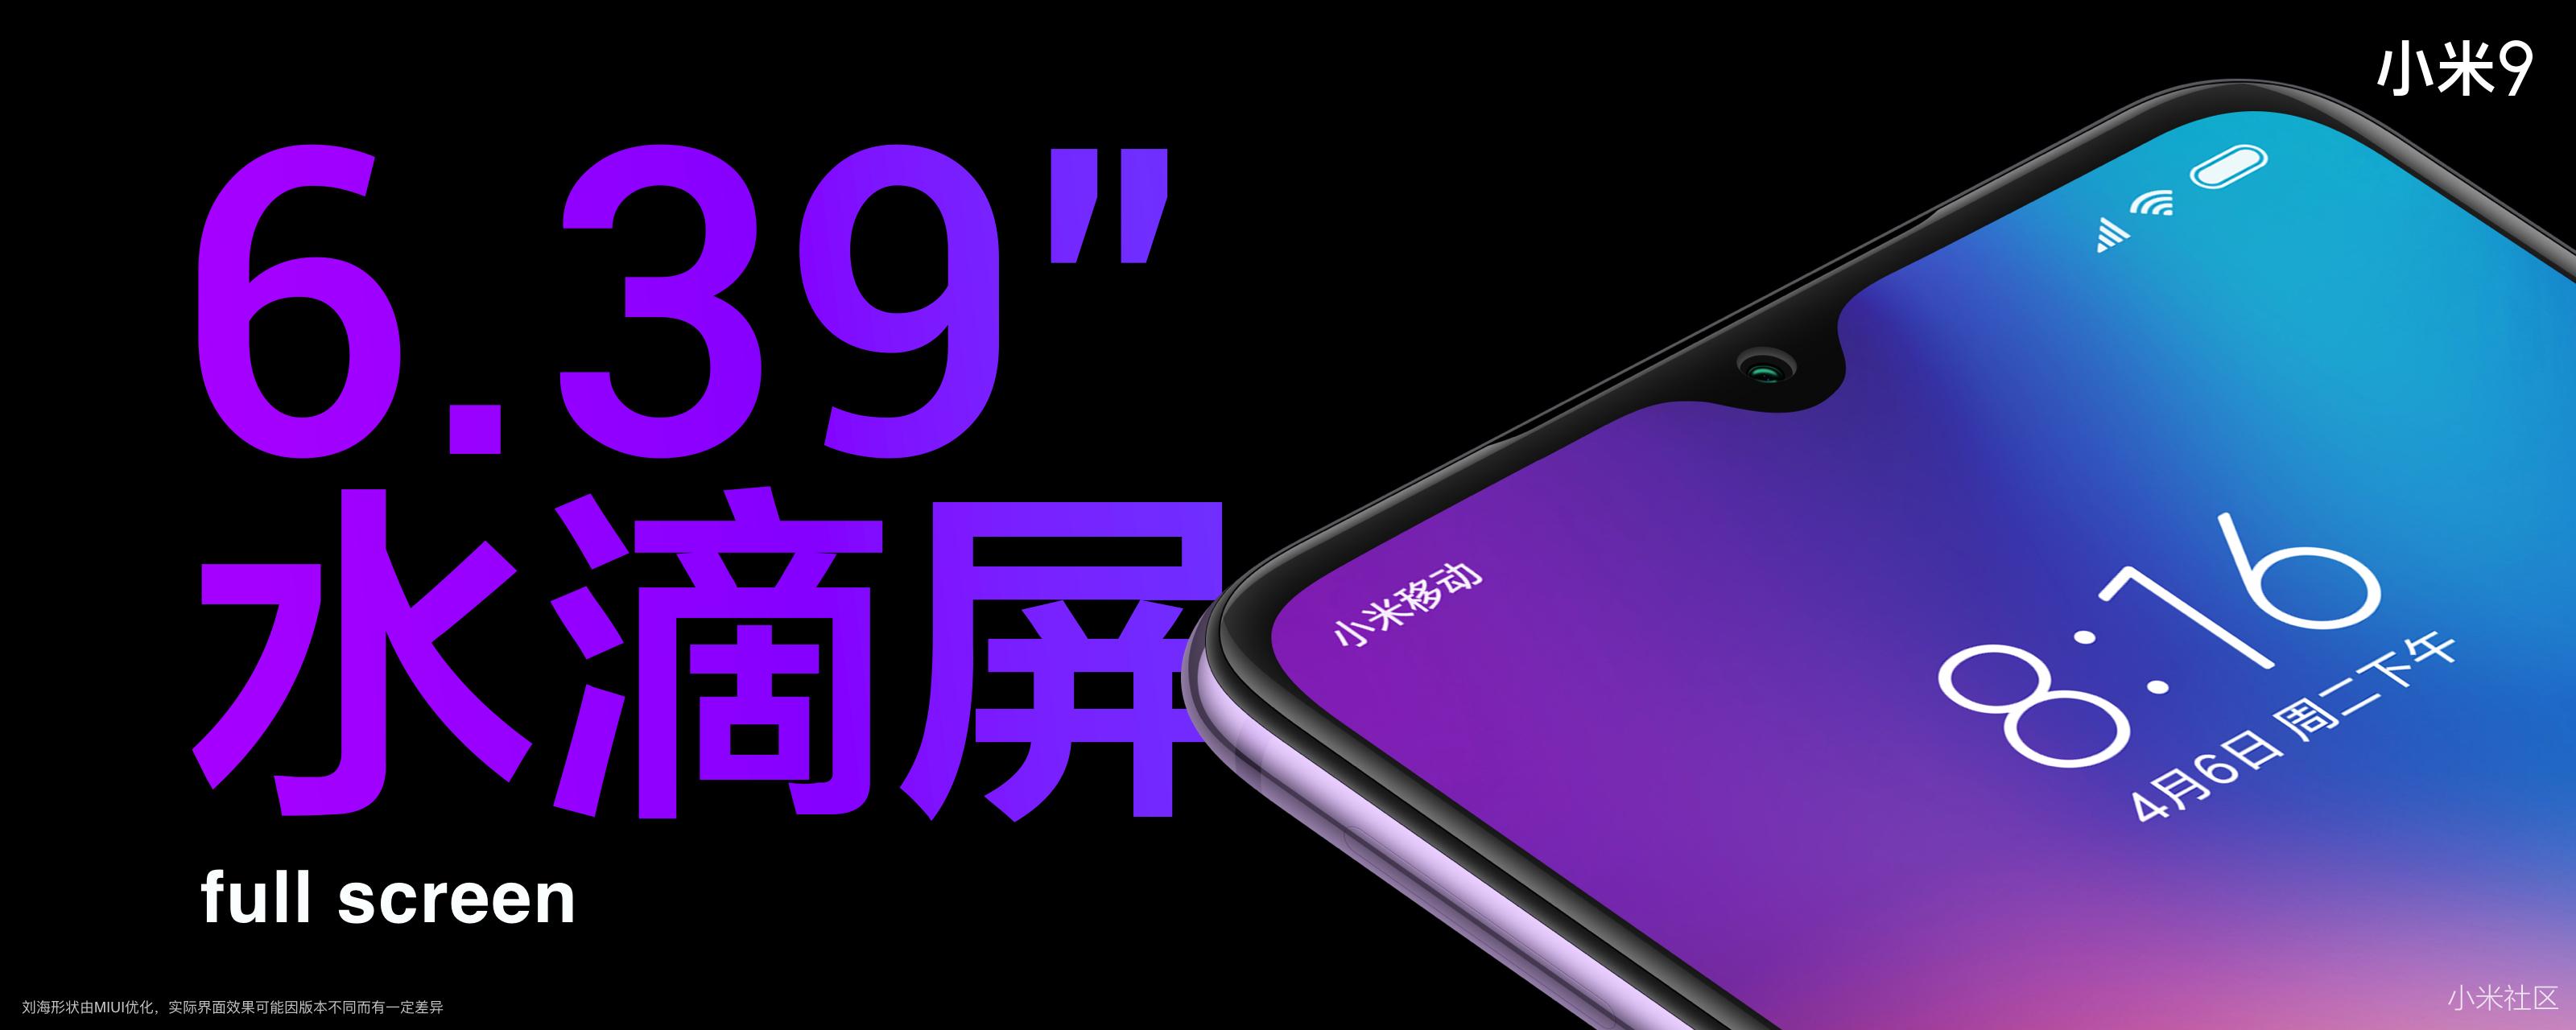 Xiaomi Mi 9 cính thức
trình làng với Snapdragon 855, camera 48MP, cảm biến vân tay
trong màn hình, giá từ 10,3 triệu